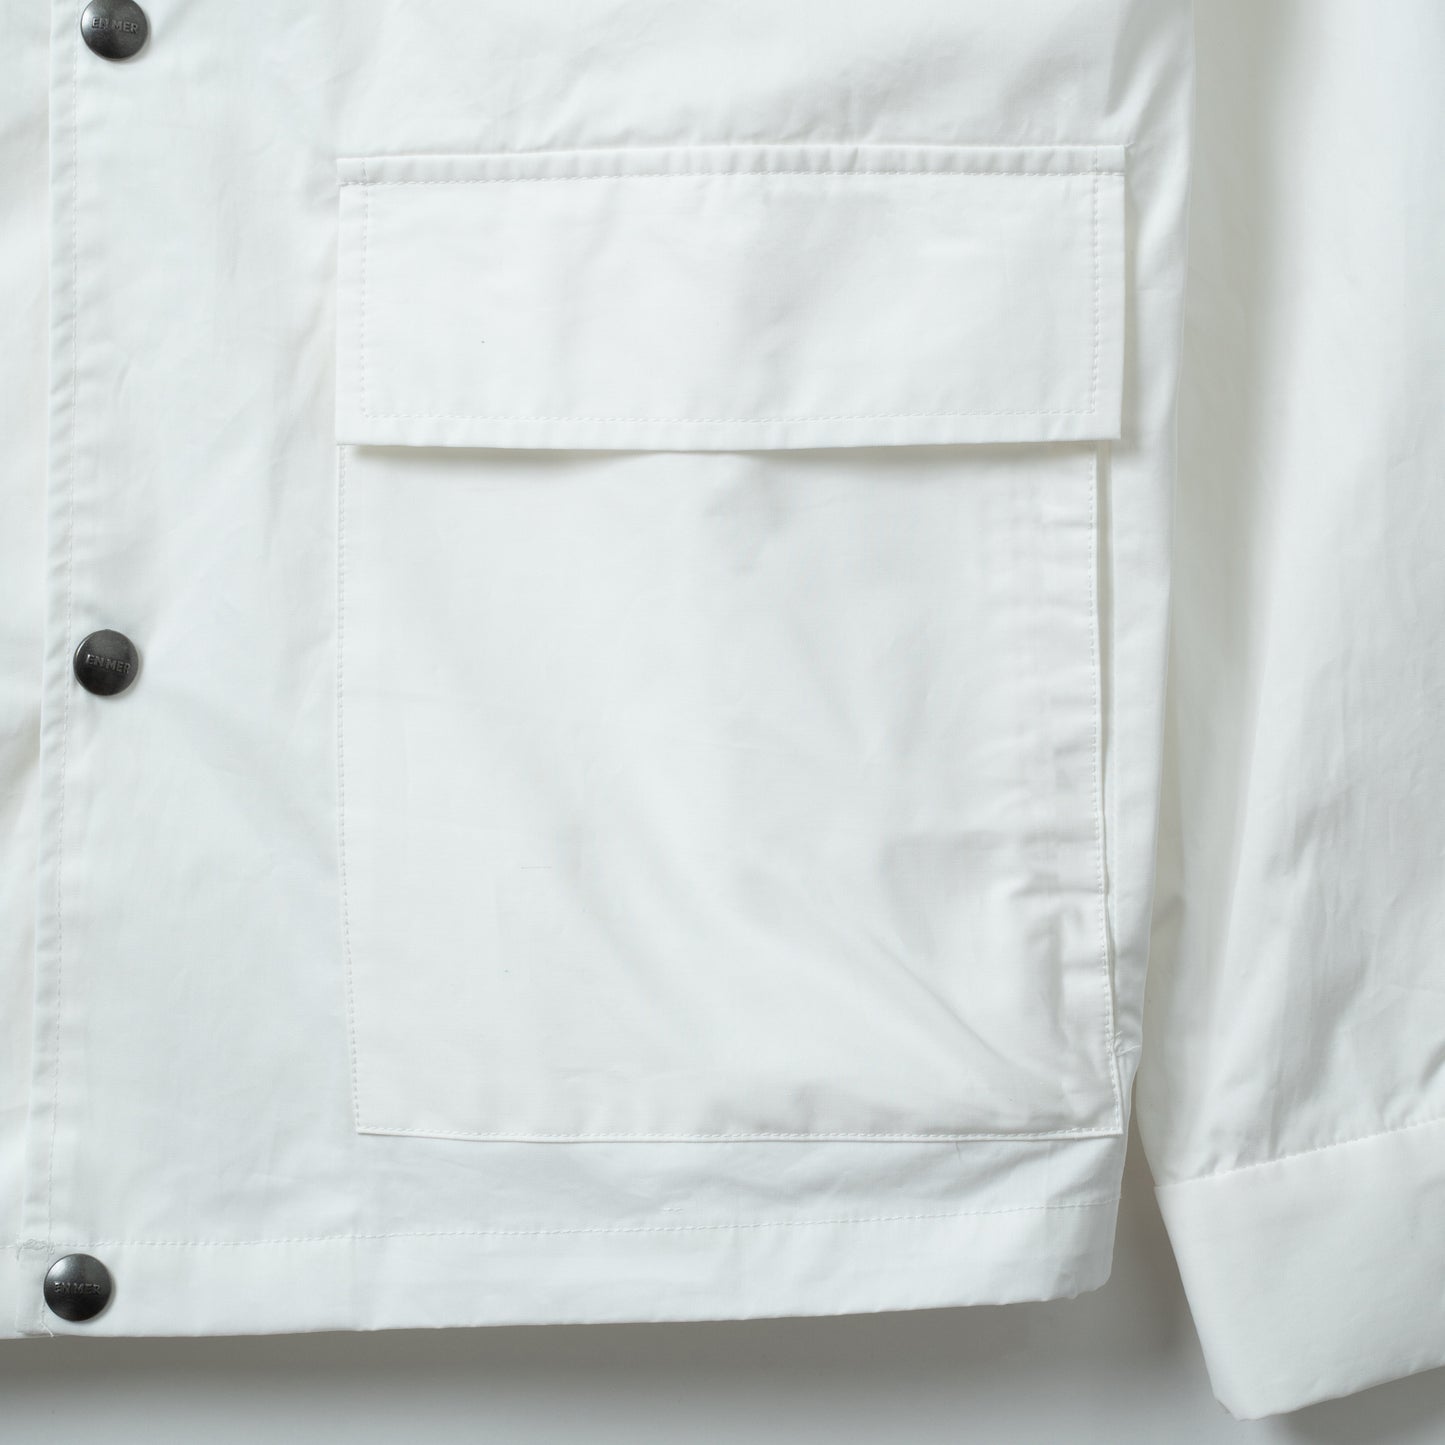 Pockets Hang Tag Coach Shirt (WHITE)